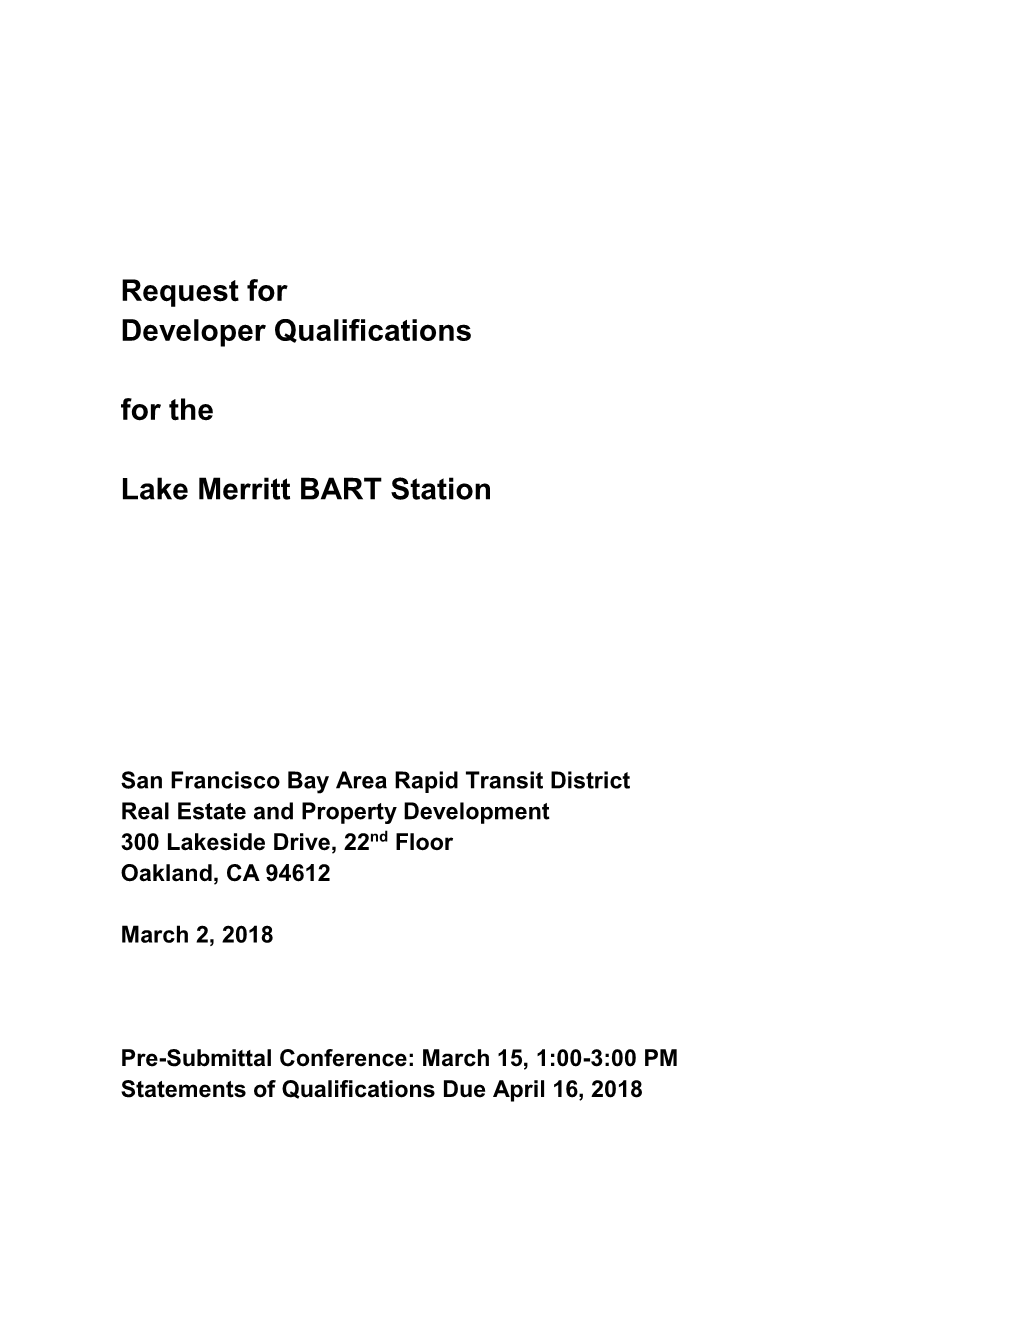 Request for Developer Qualifications for the Lake Merritt BART Station